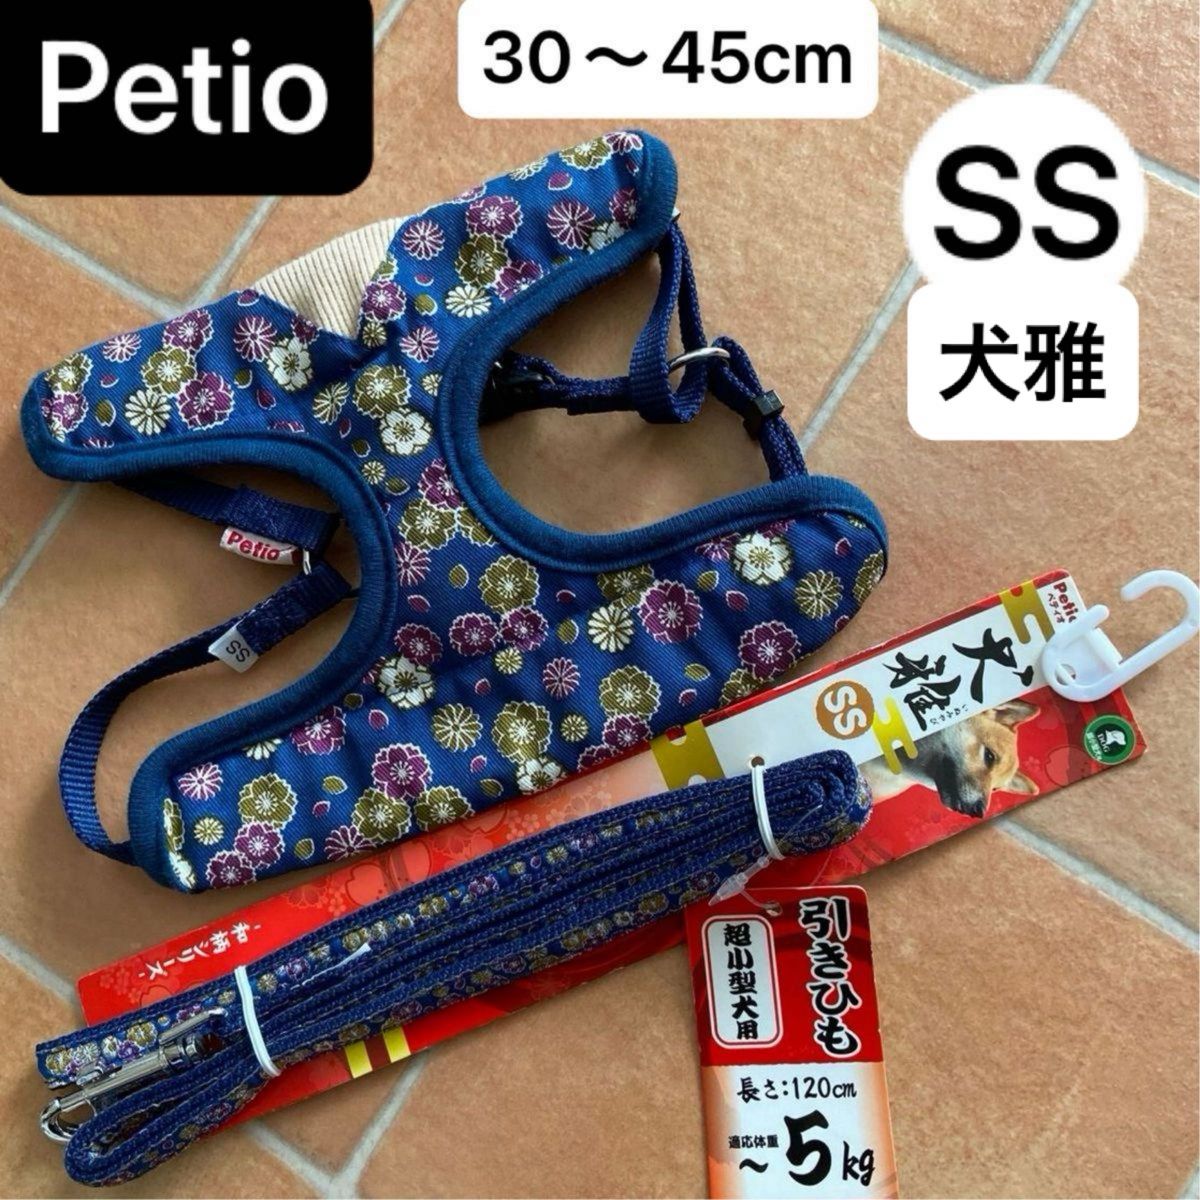 Petio・ペティオ・犬雅・ハーネス&リード・1組セット・小型犬・ SS・平紐